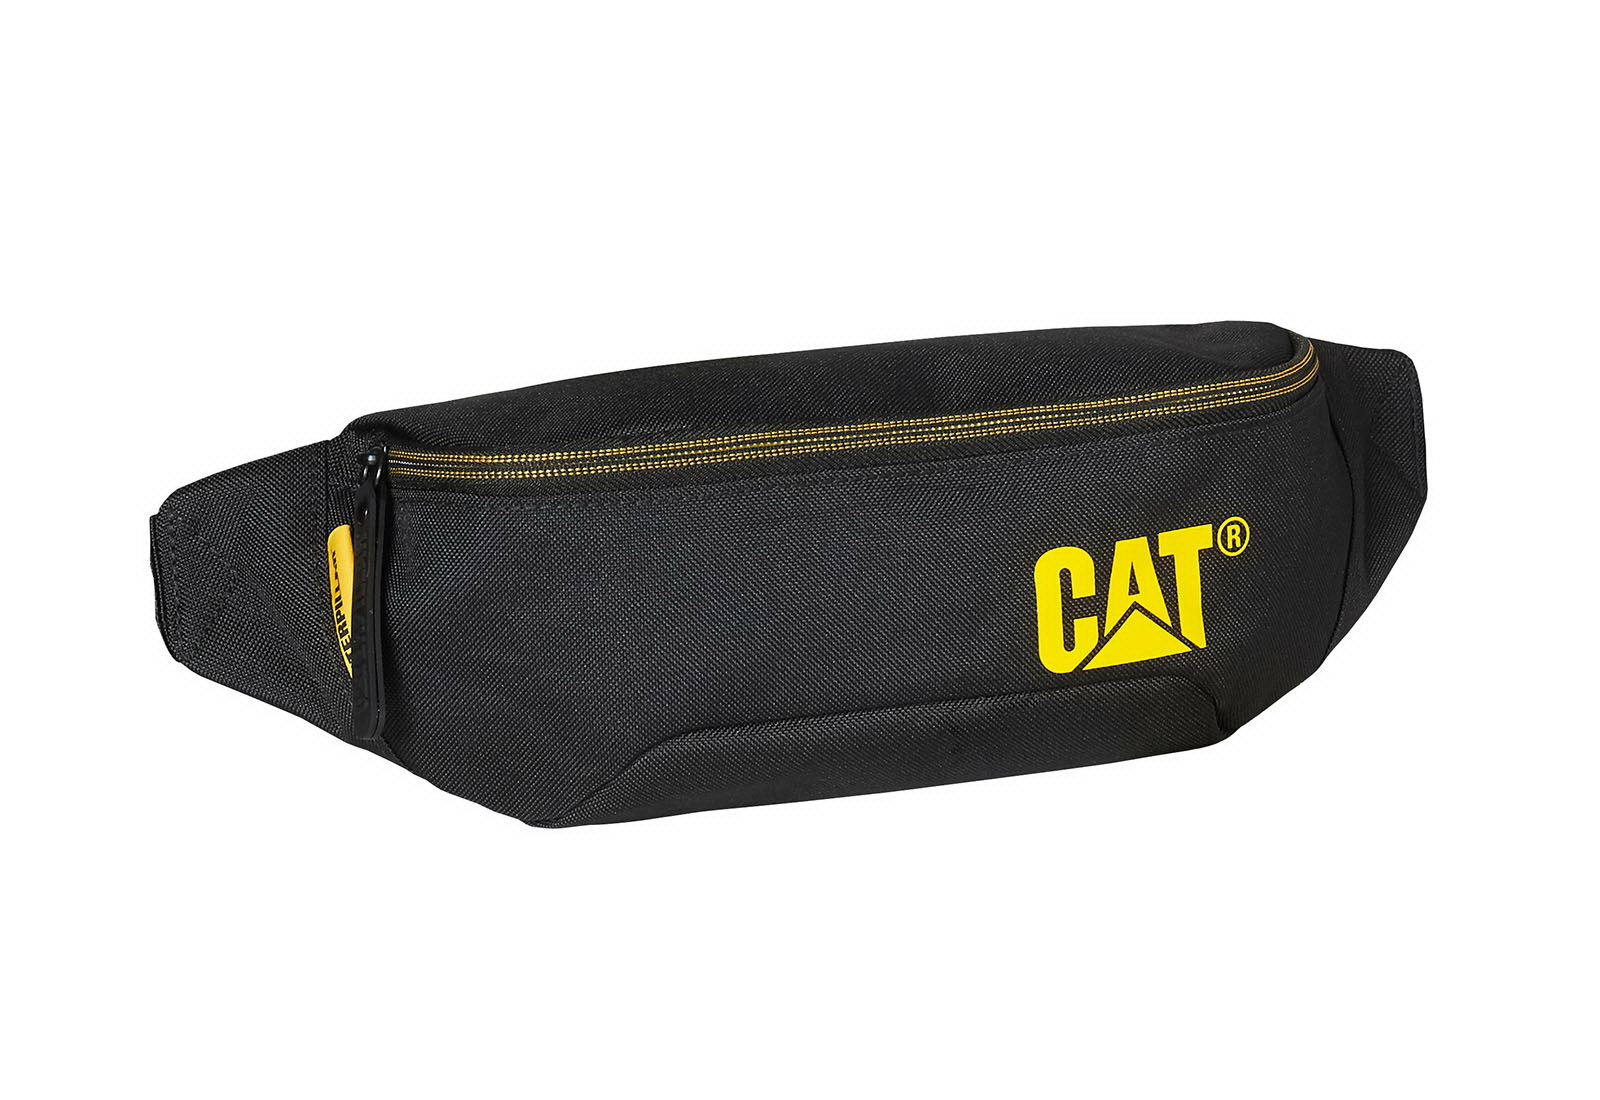 CAT Genti Waist Bag Black Co